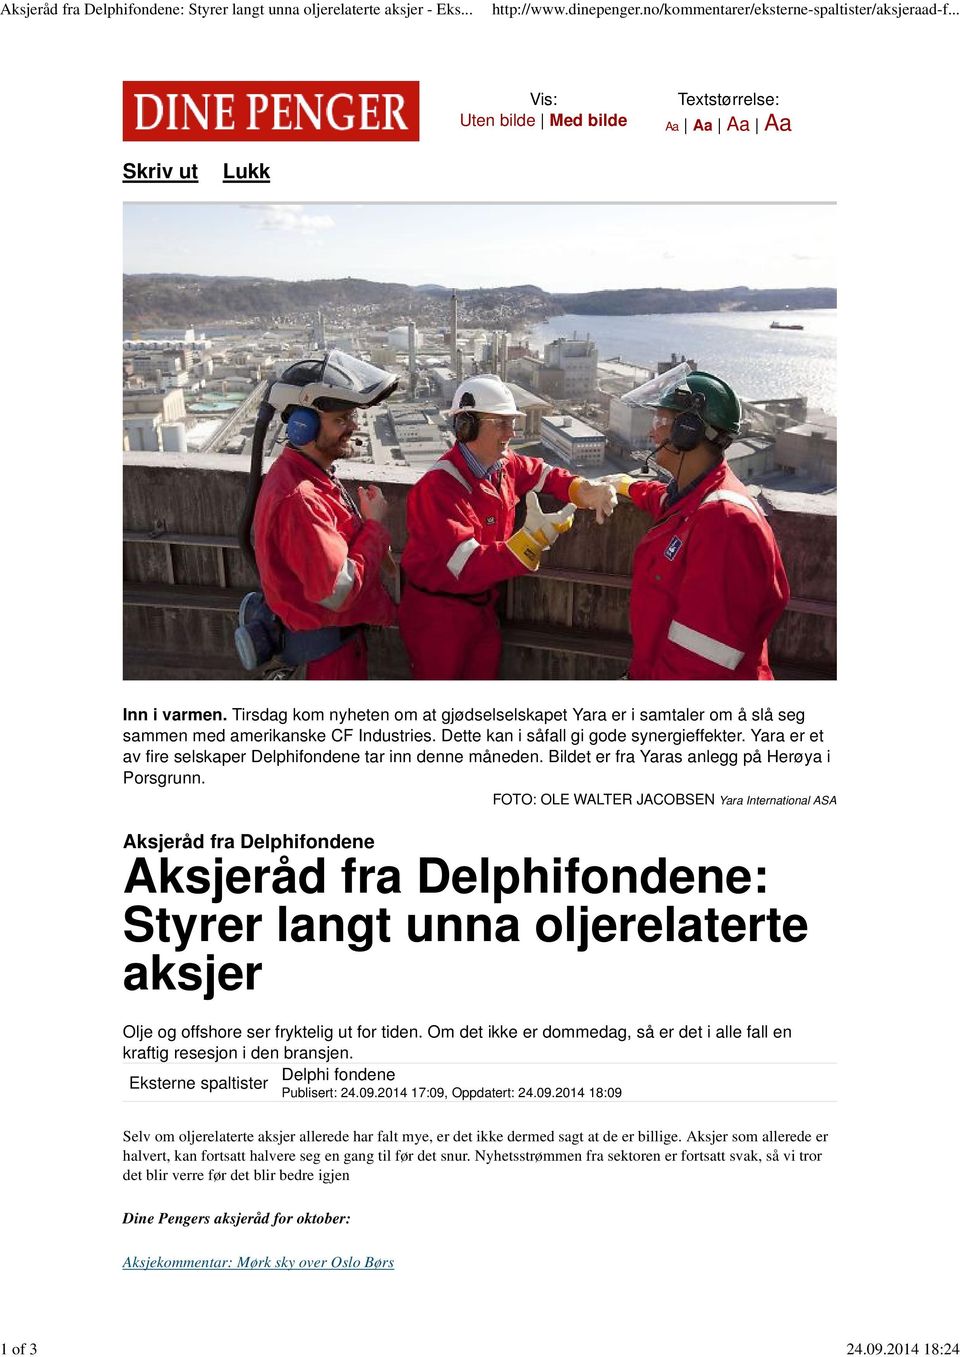 Yara er et av fire selskaper Delphifondene tar inn denne måneden. Bildet er fra Yaras anlegg på Herøya i Porsgrunn.